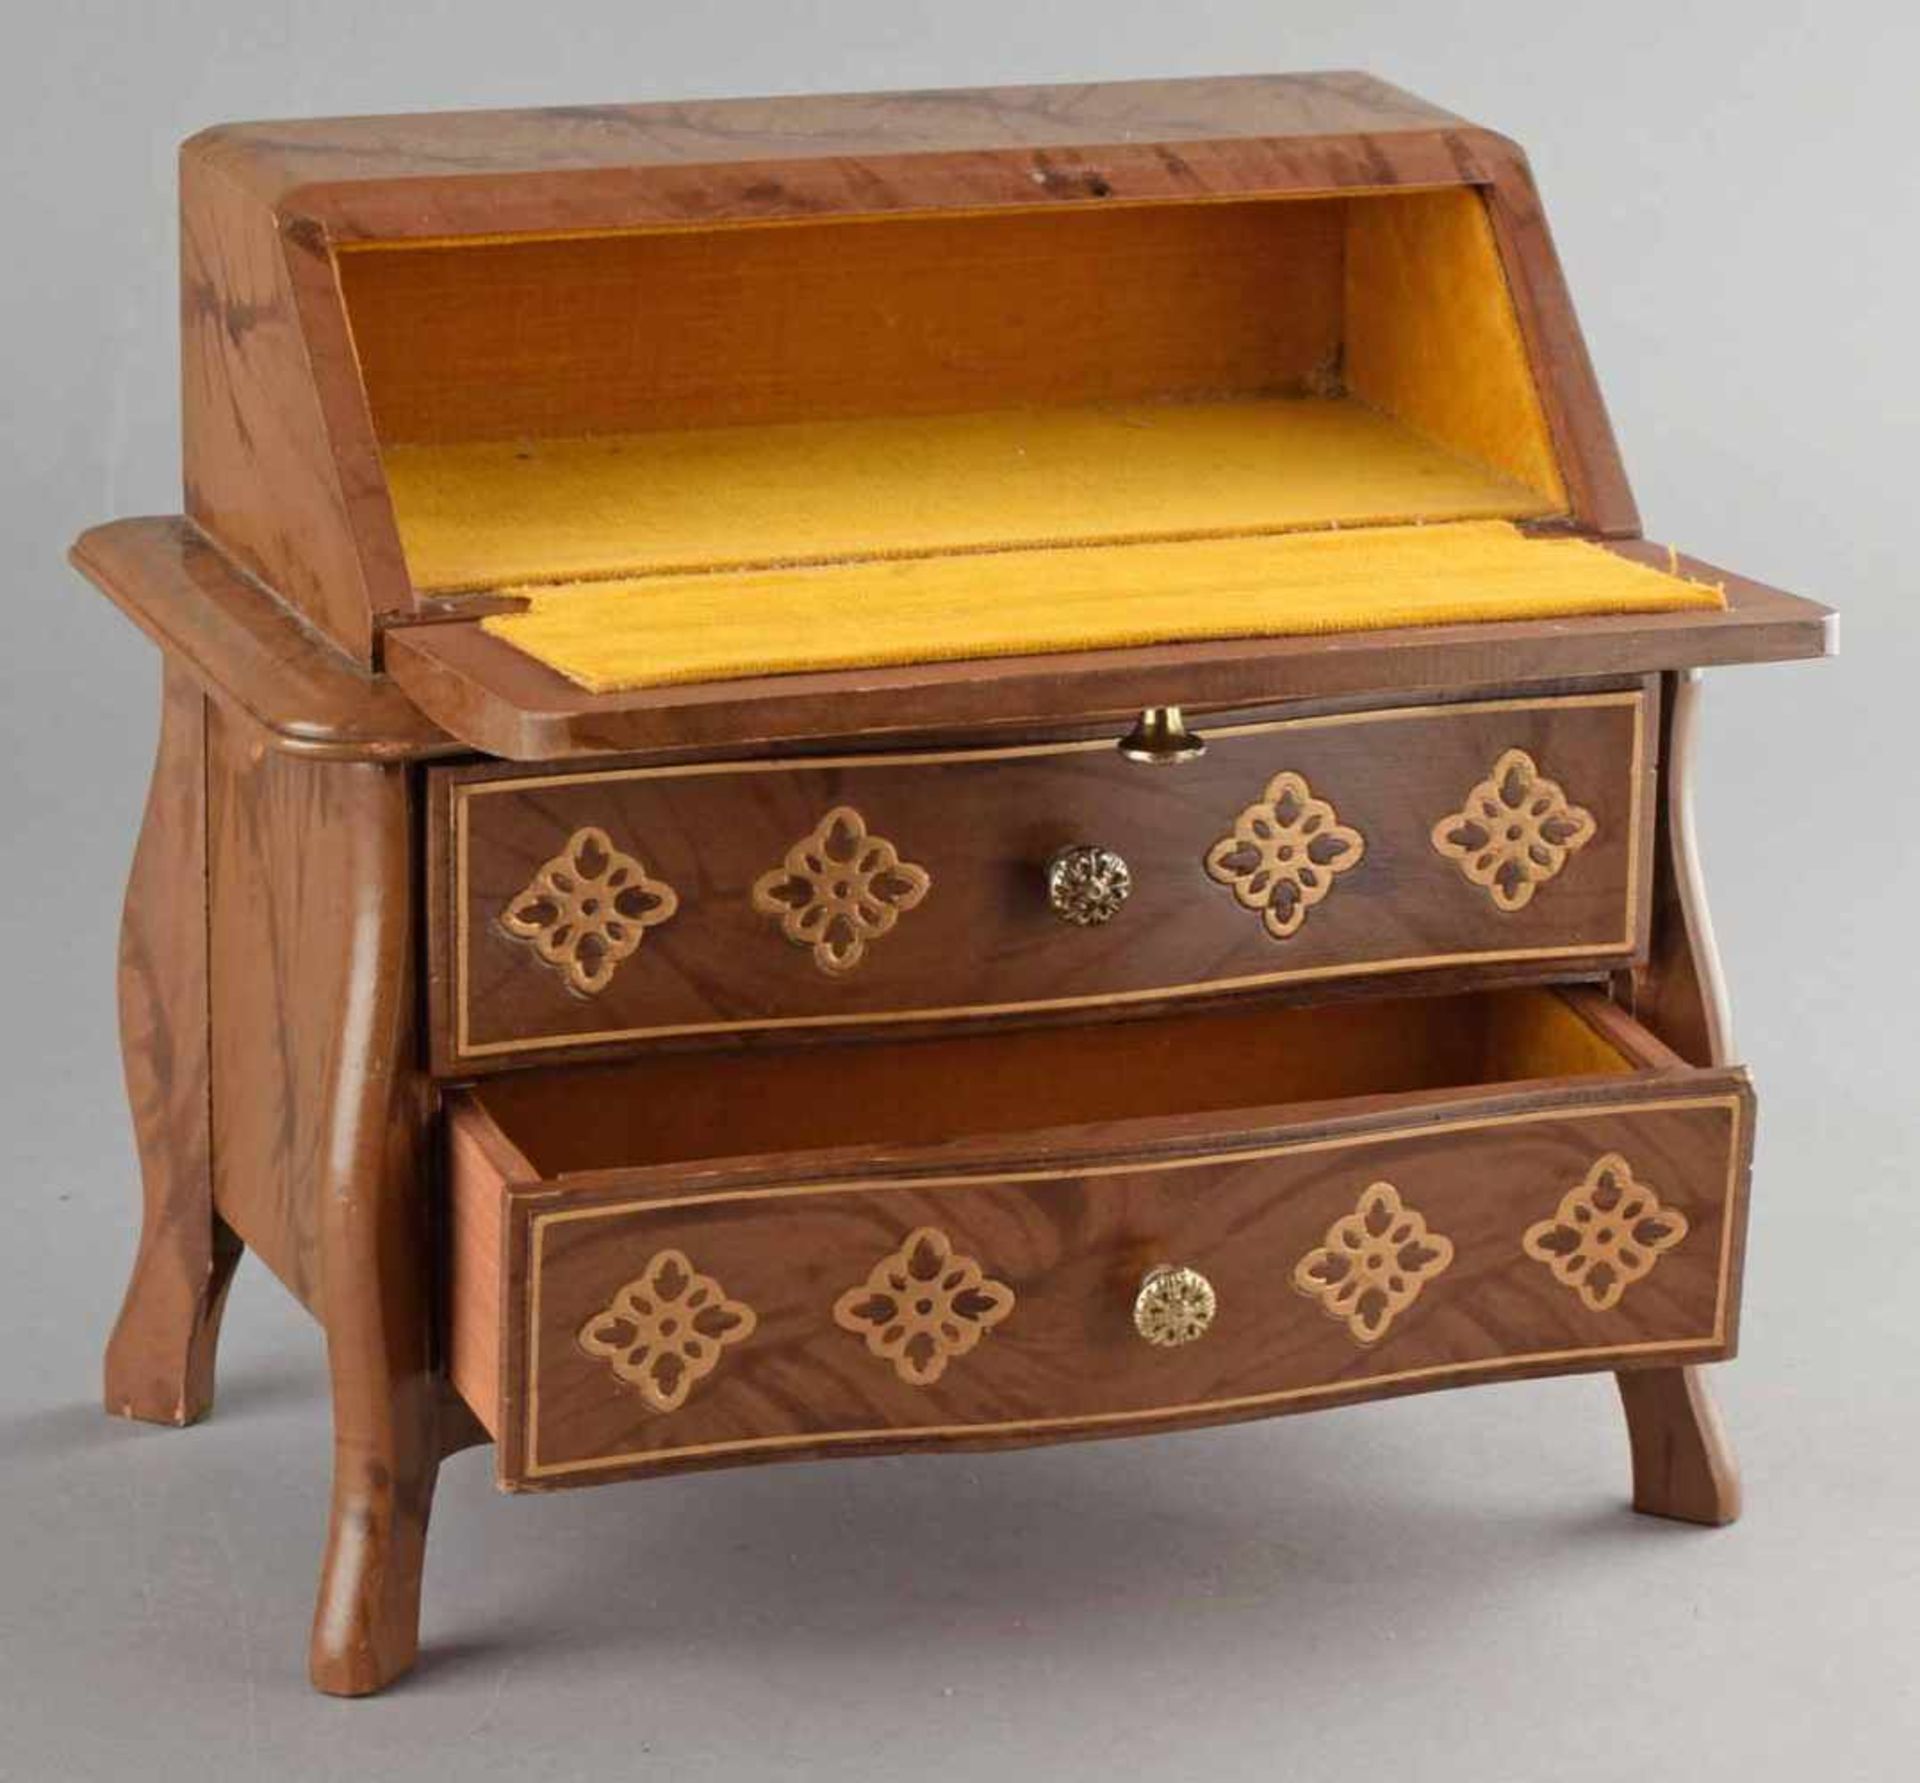 Schmuckschatulle in Form eines Pultsekretärs, zwei Schübe und Pultklappe, mit Spieluhr, innen - Bild 3 aus 4